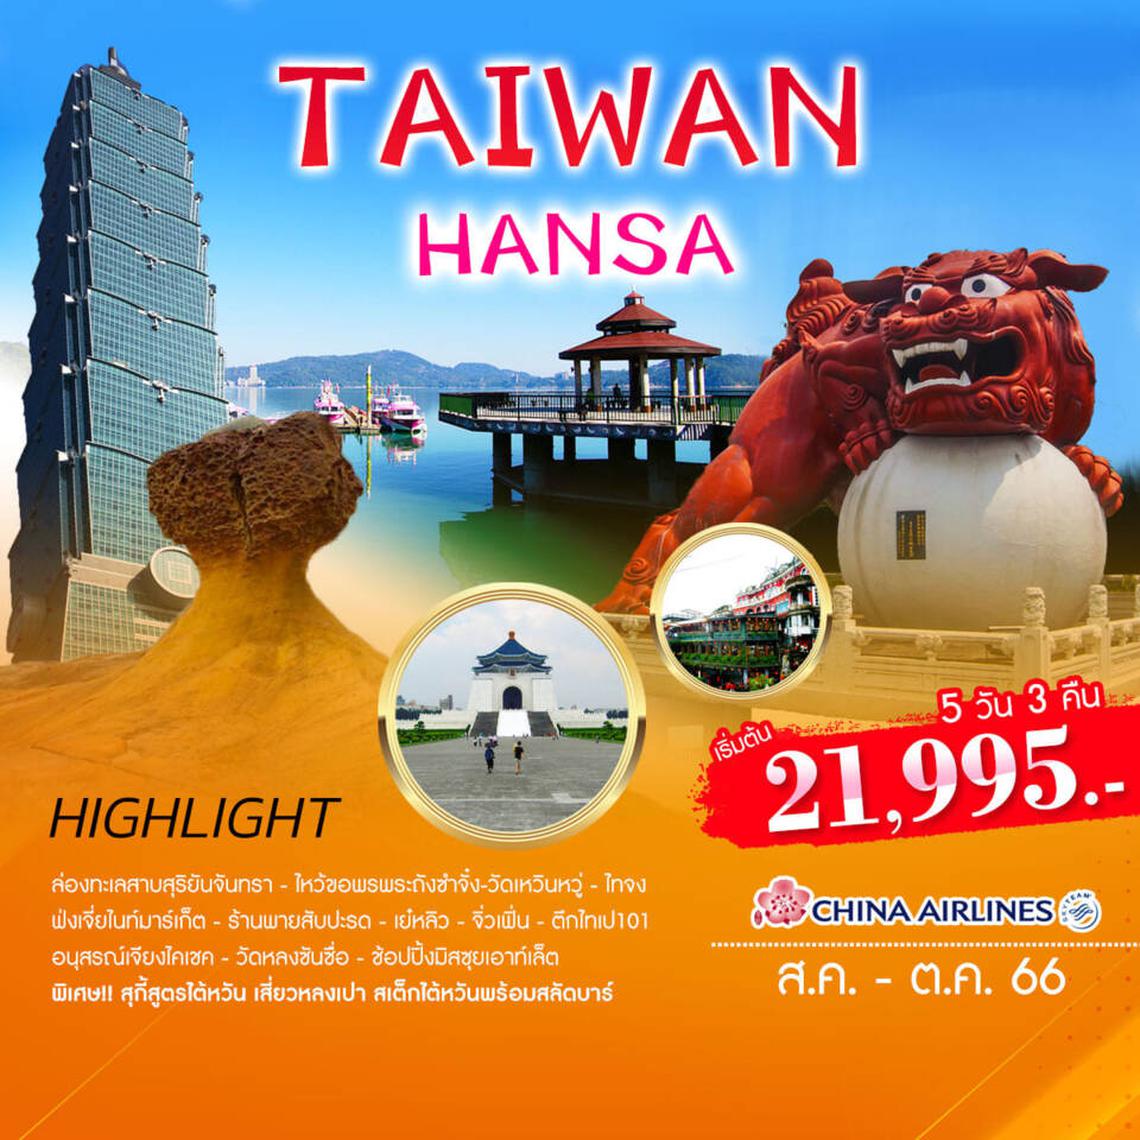 VTPE01 TAIWAN HANSA 5D3N BY CI